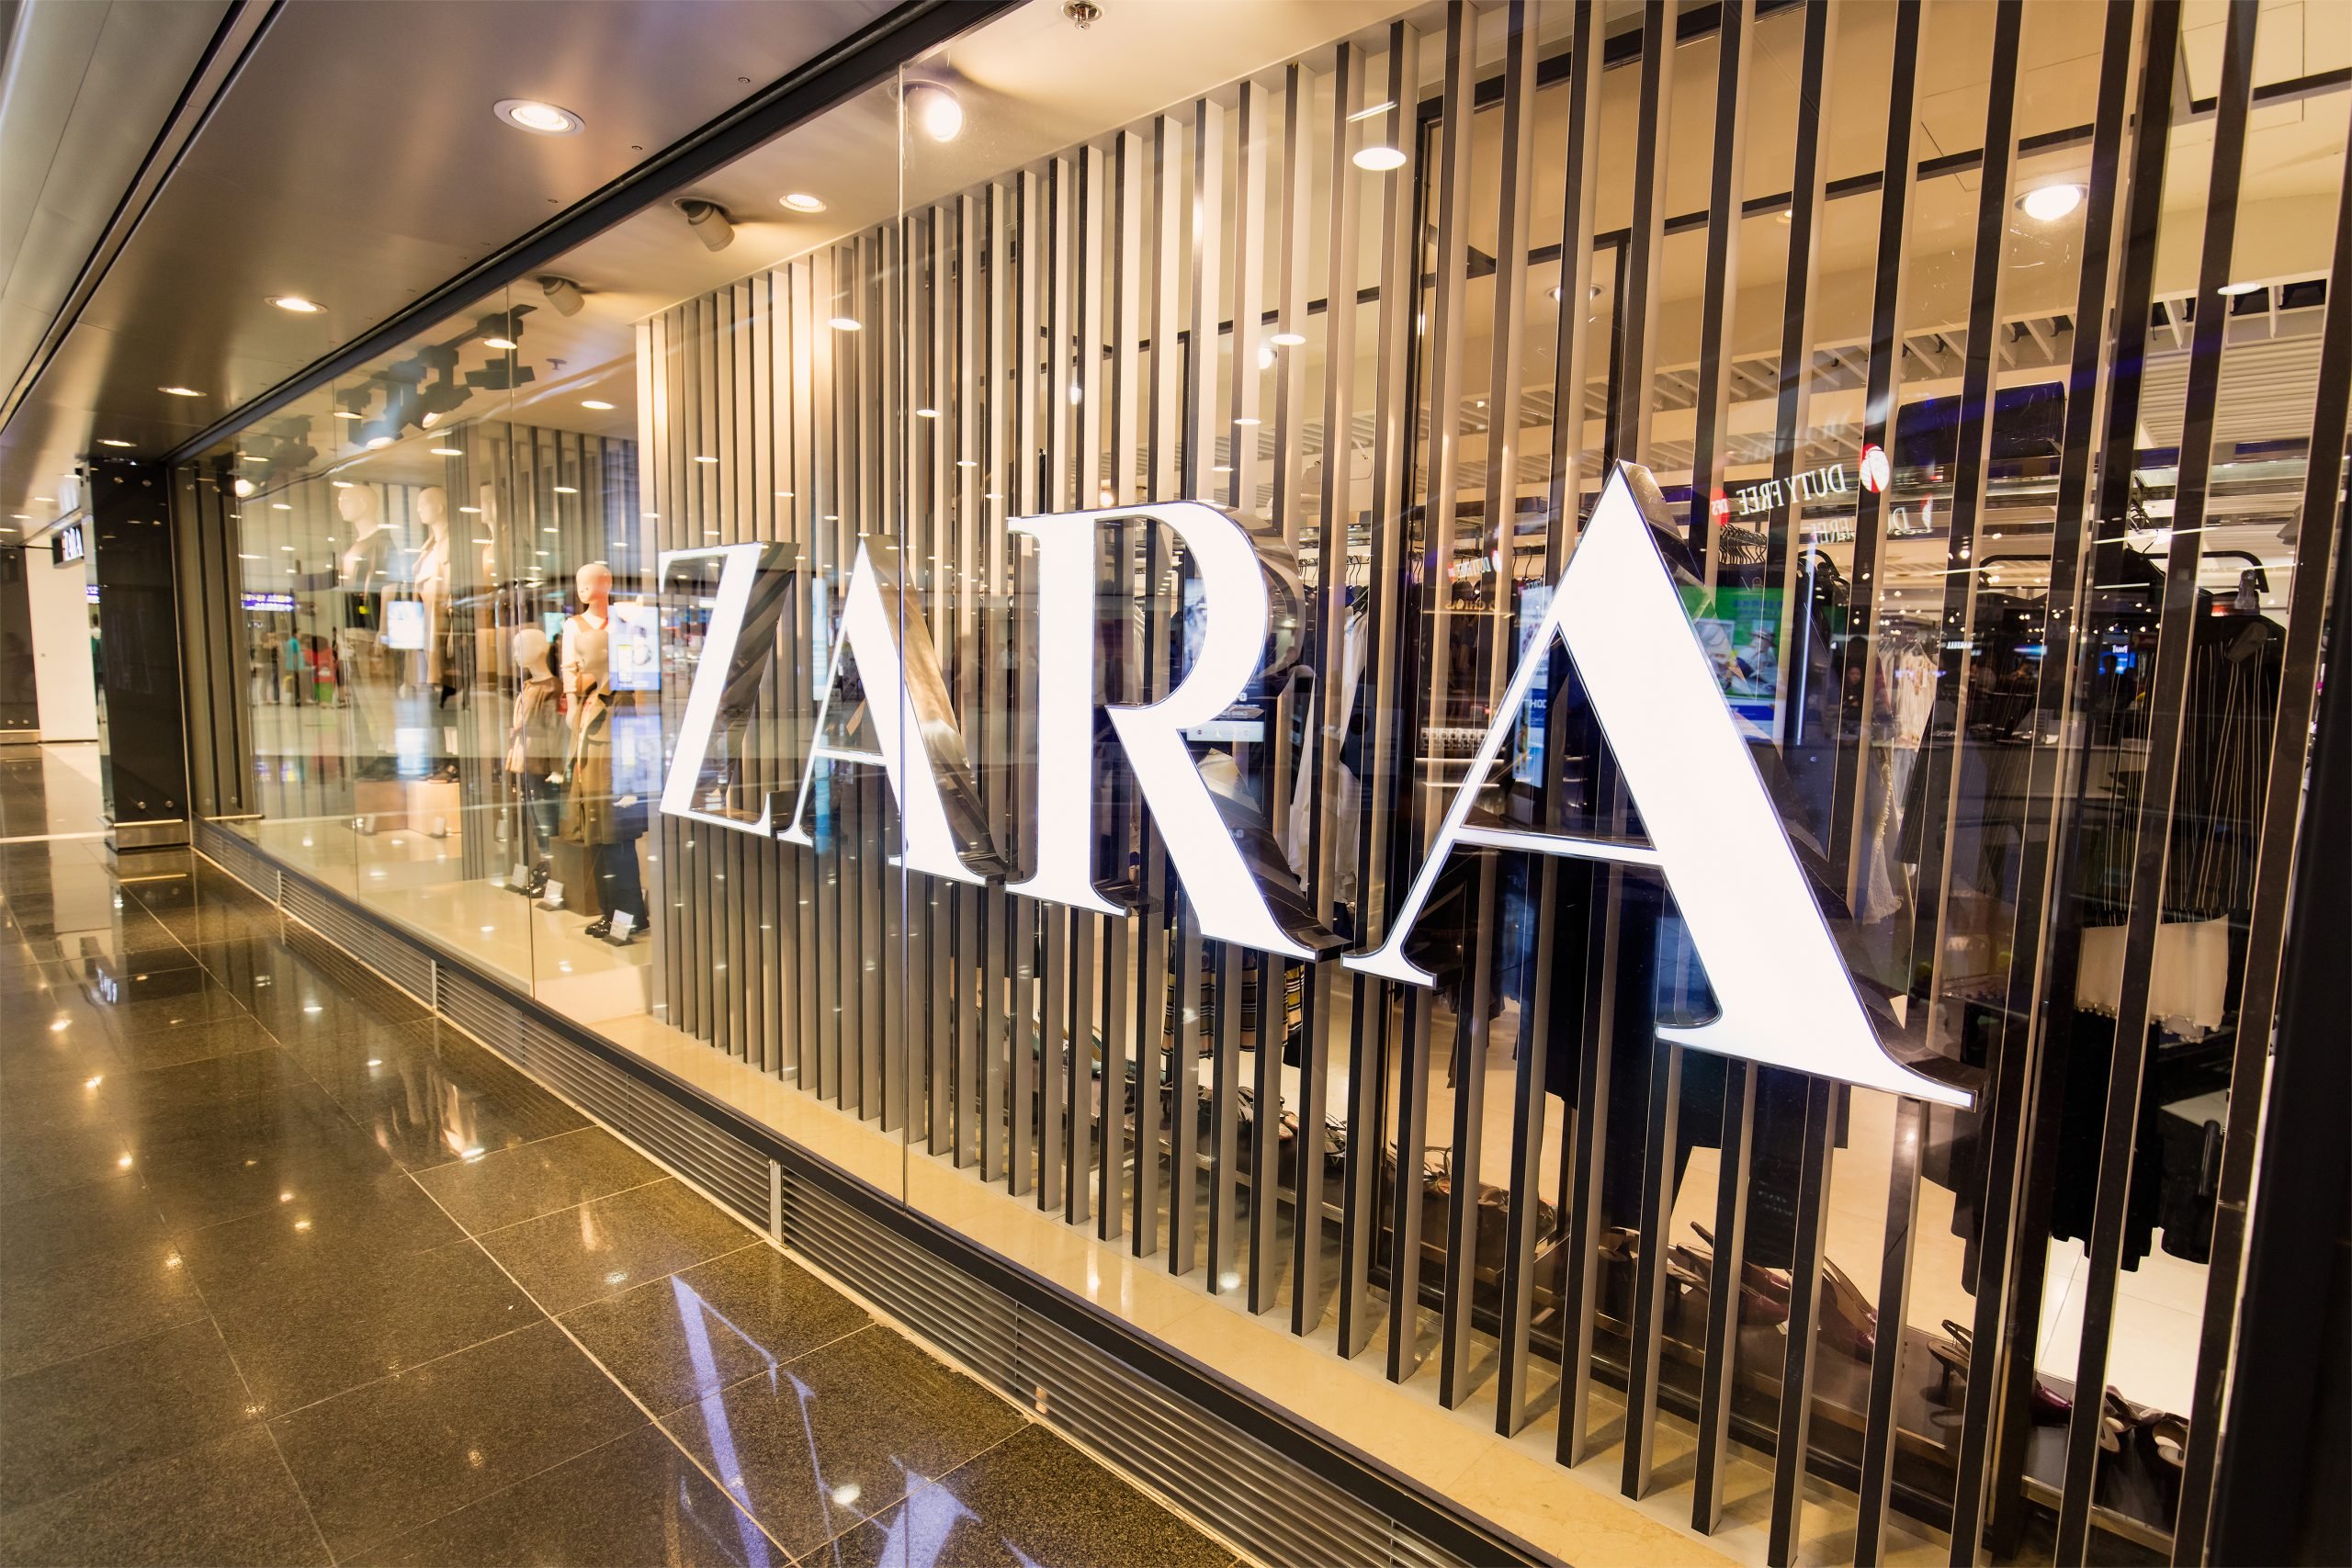 Coronavírus: Zara anuncia fechamento de mil lojas. Aos detalhes, vem!